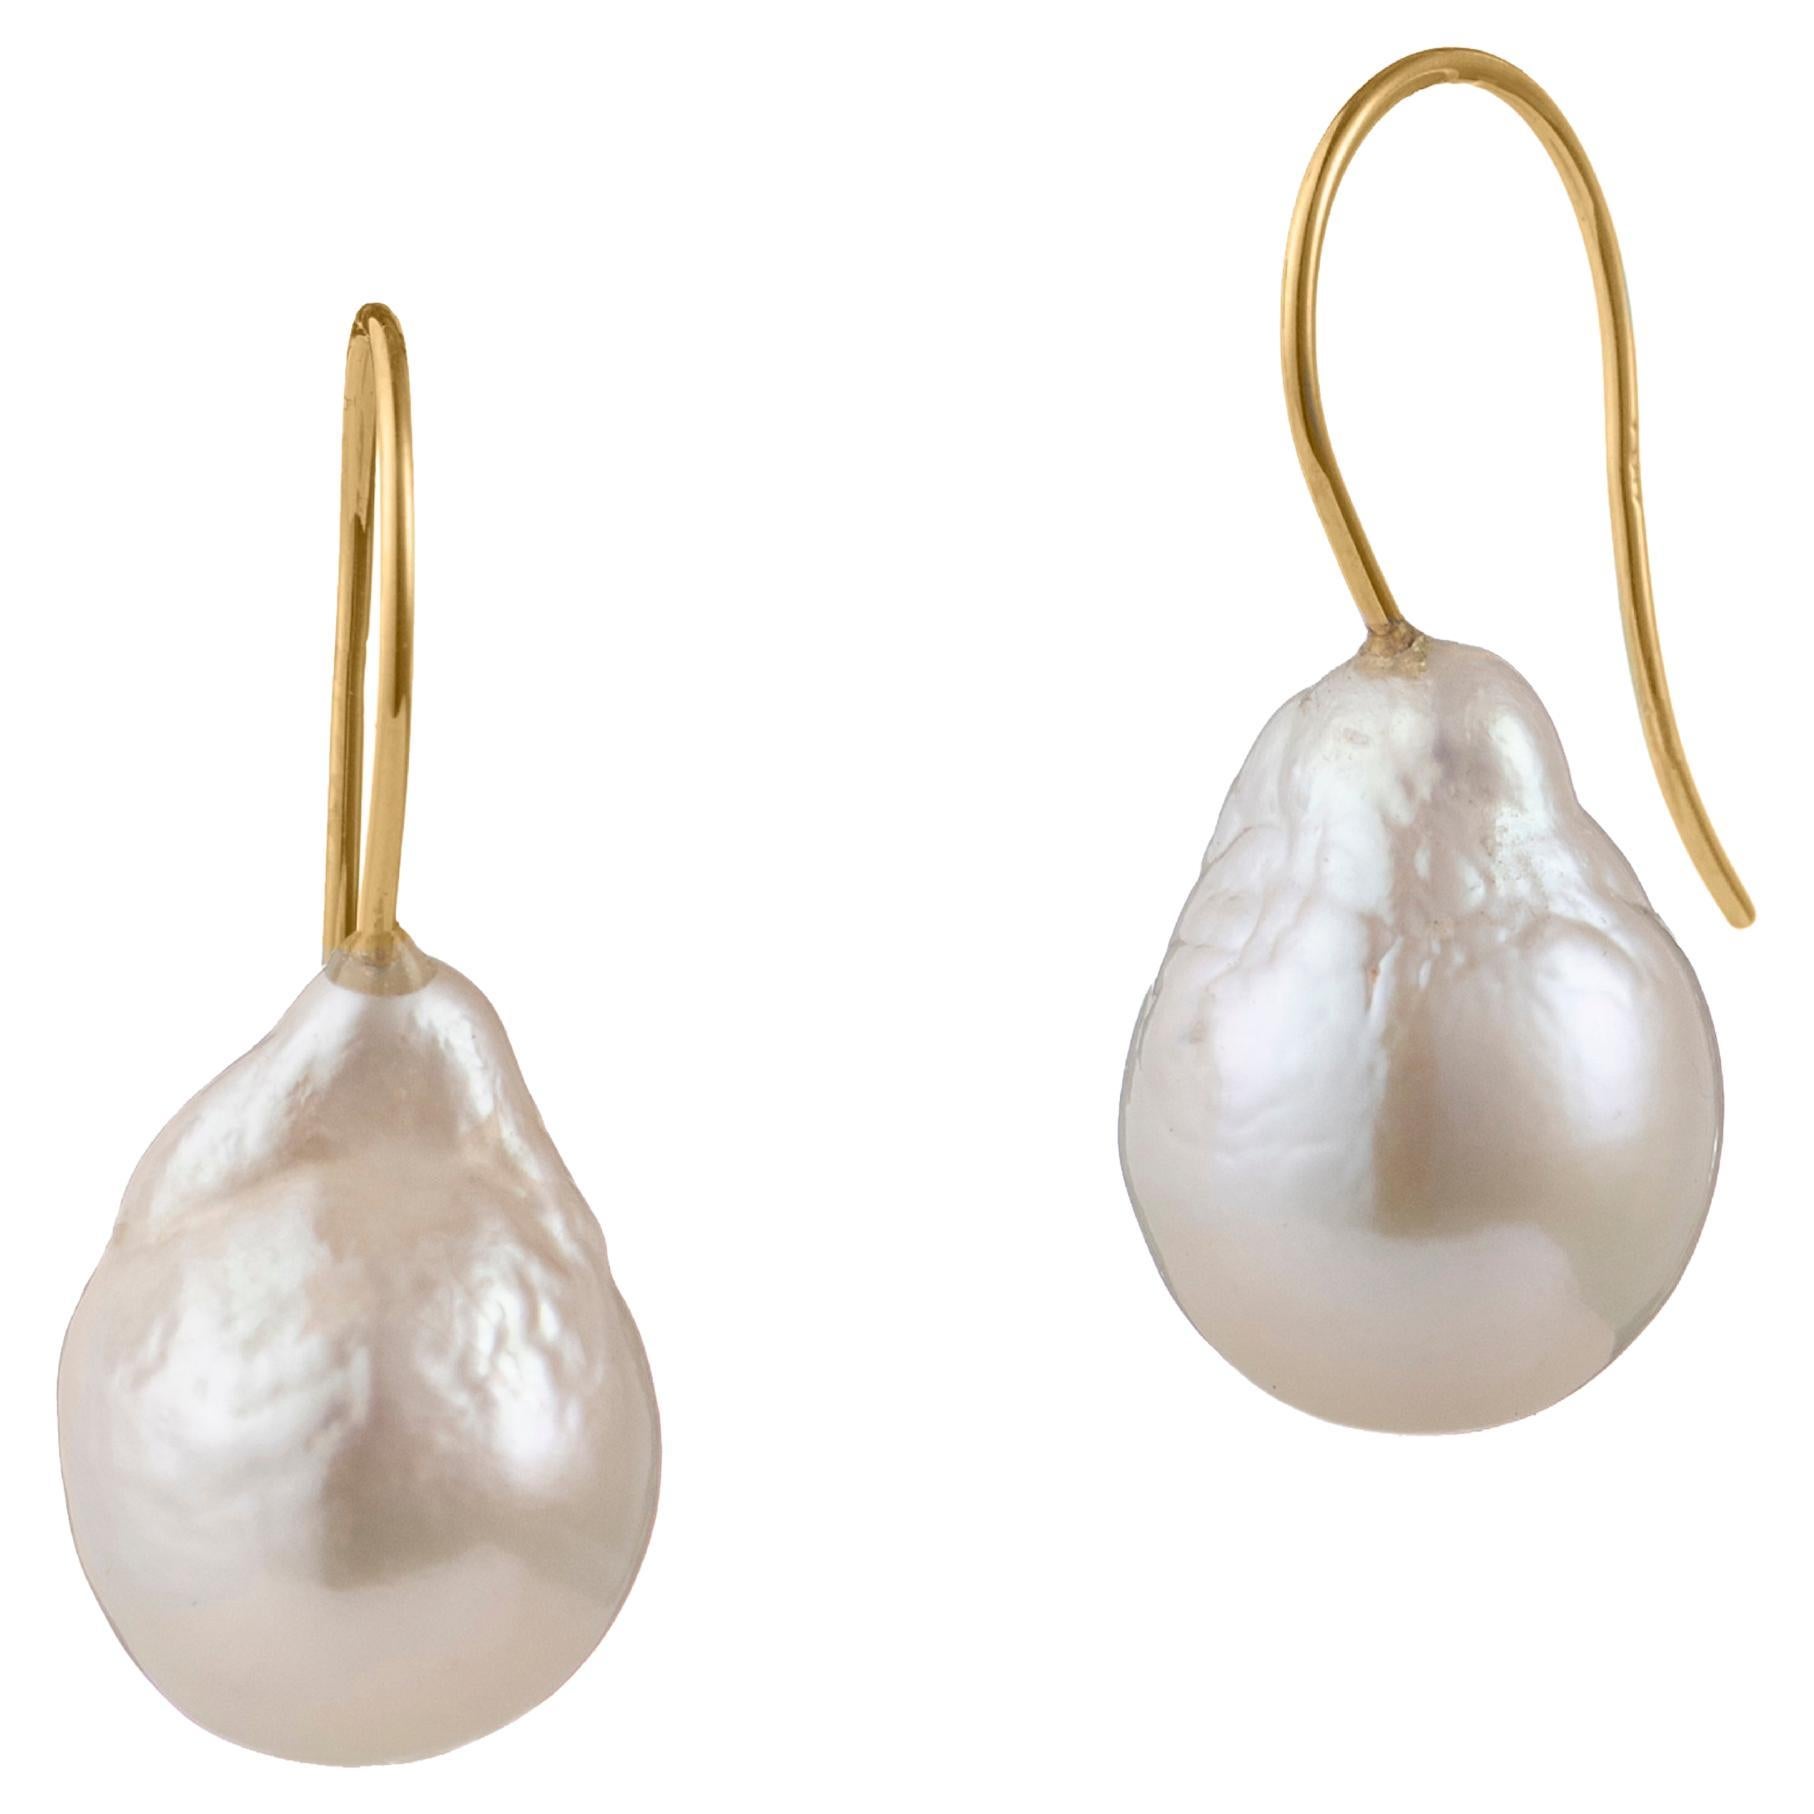 Boucles d'oreilles en or 18 carats avec perles baroques